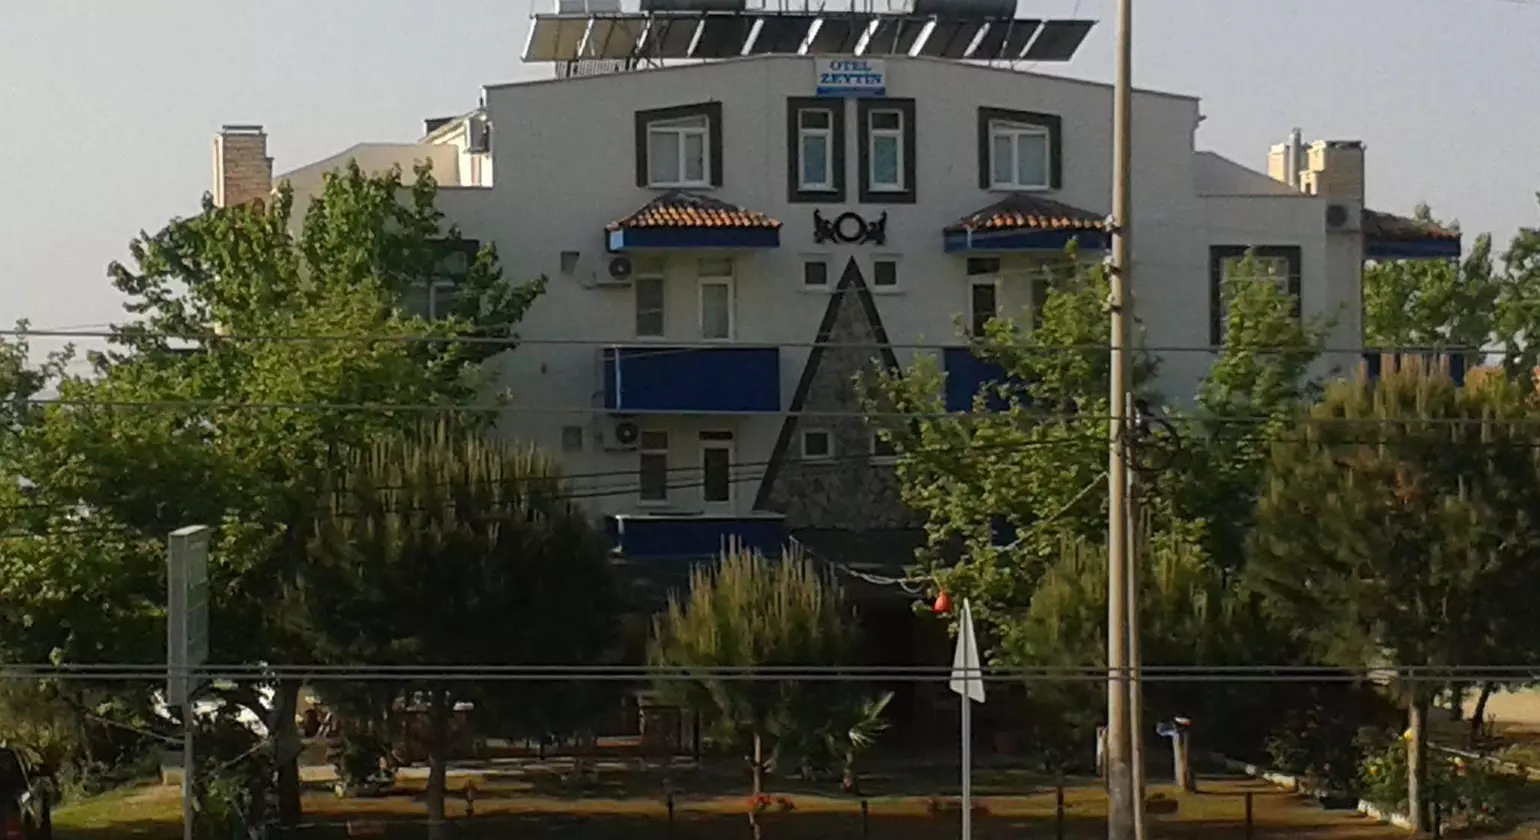 Zeytin Hotel